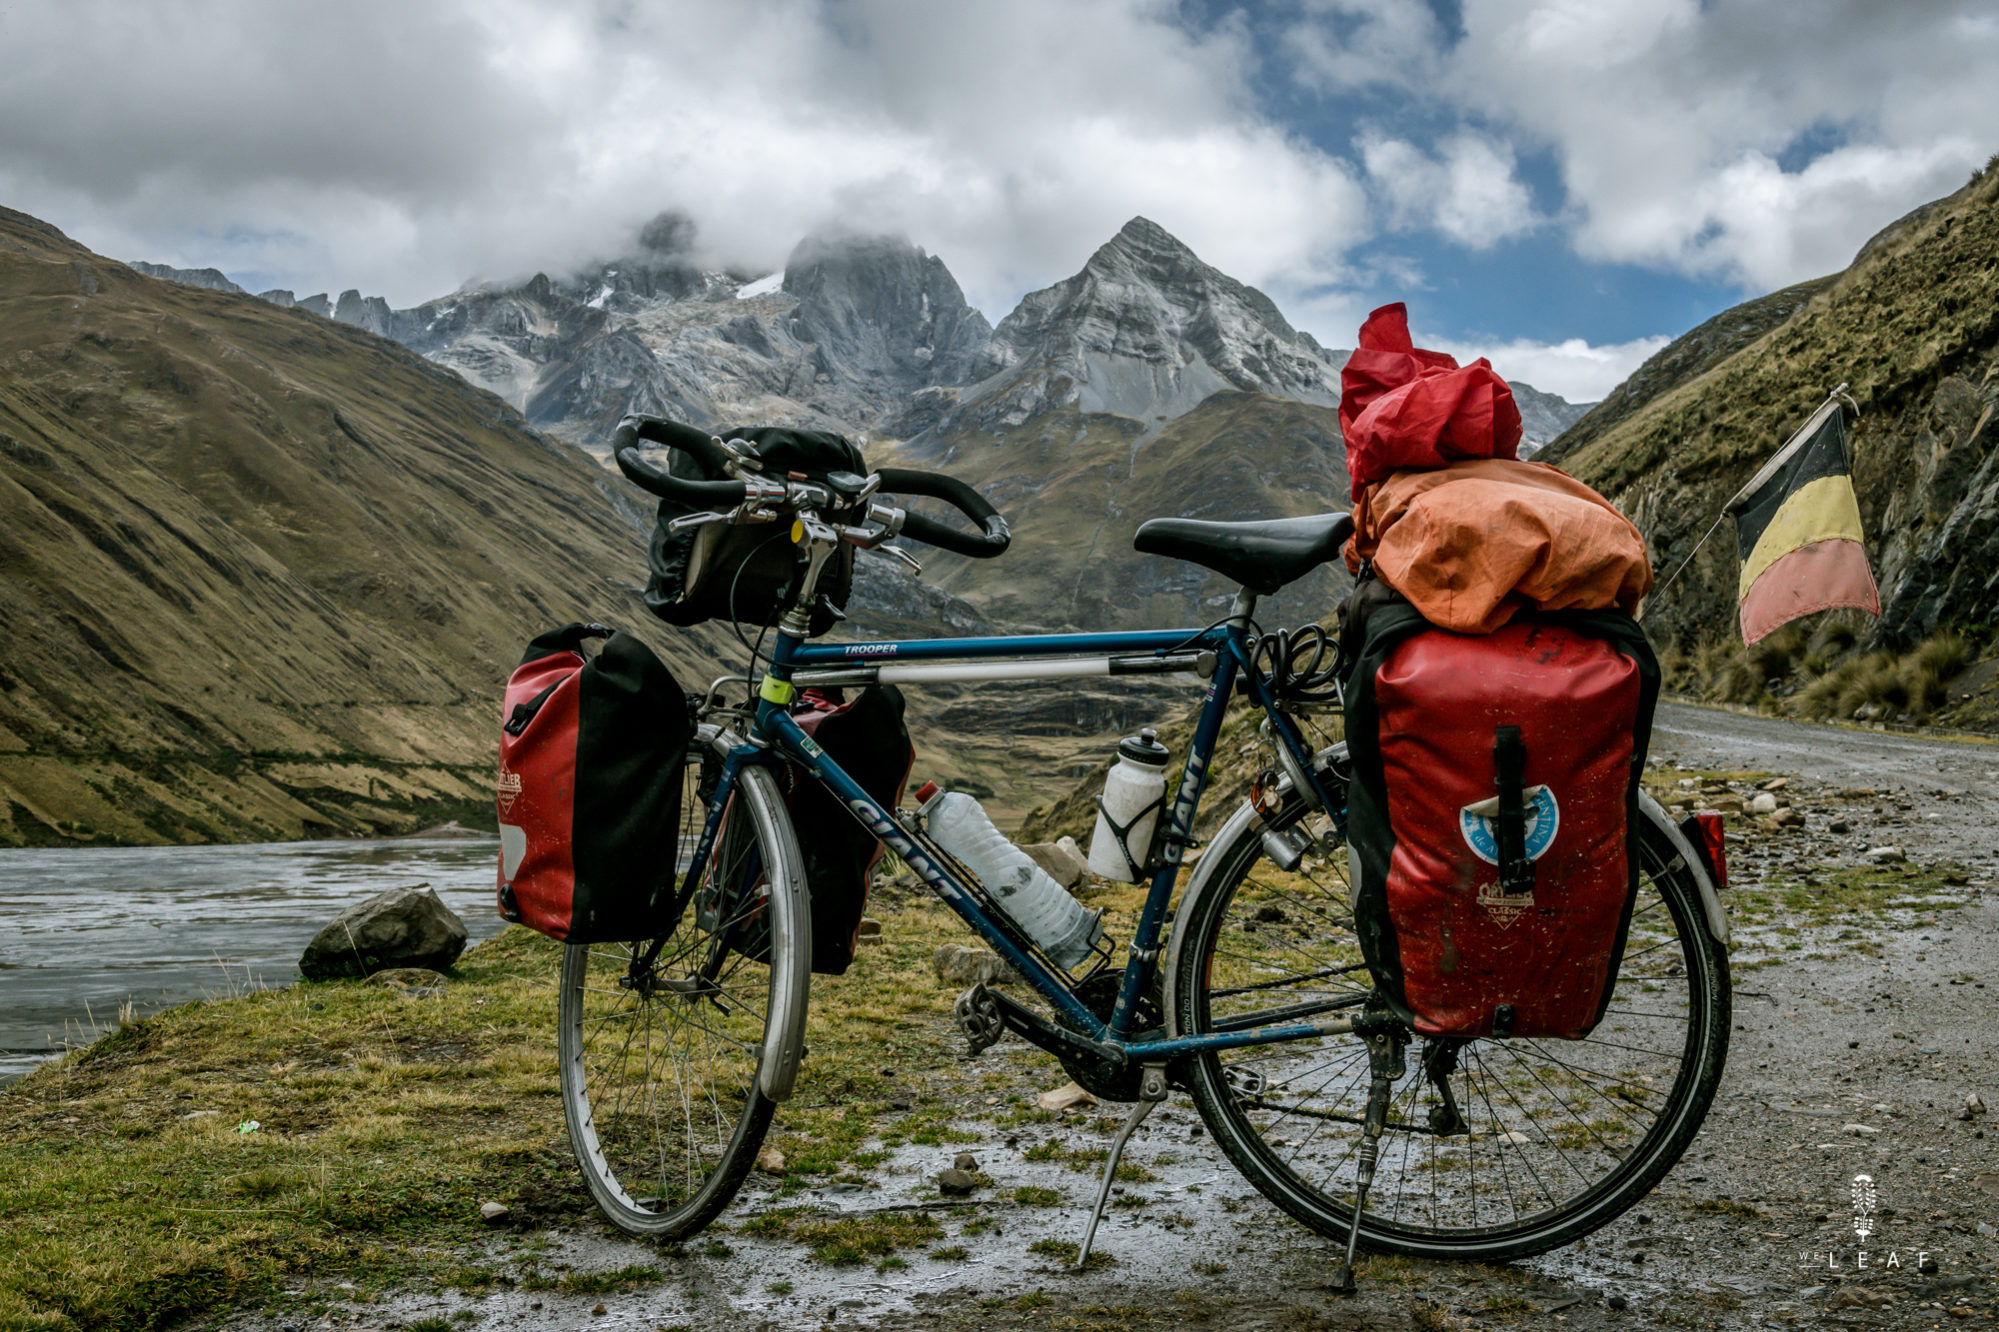 Cycling route in Peru: Huanuco to Huaraz